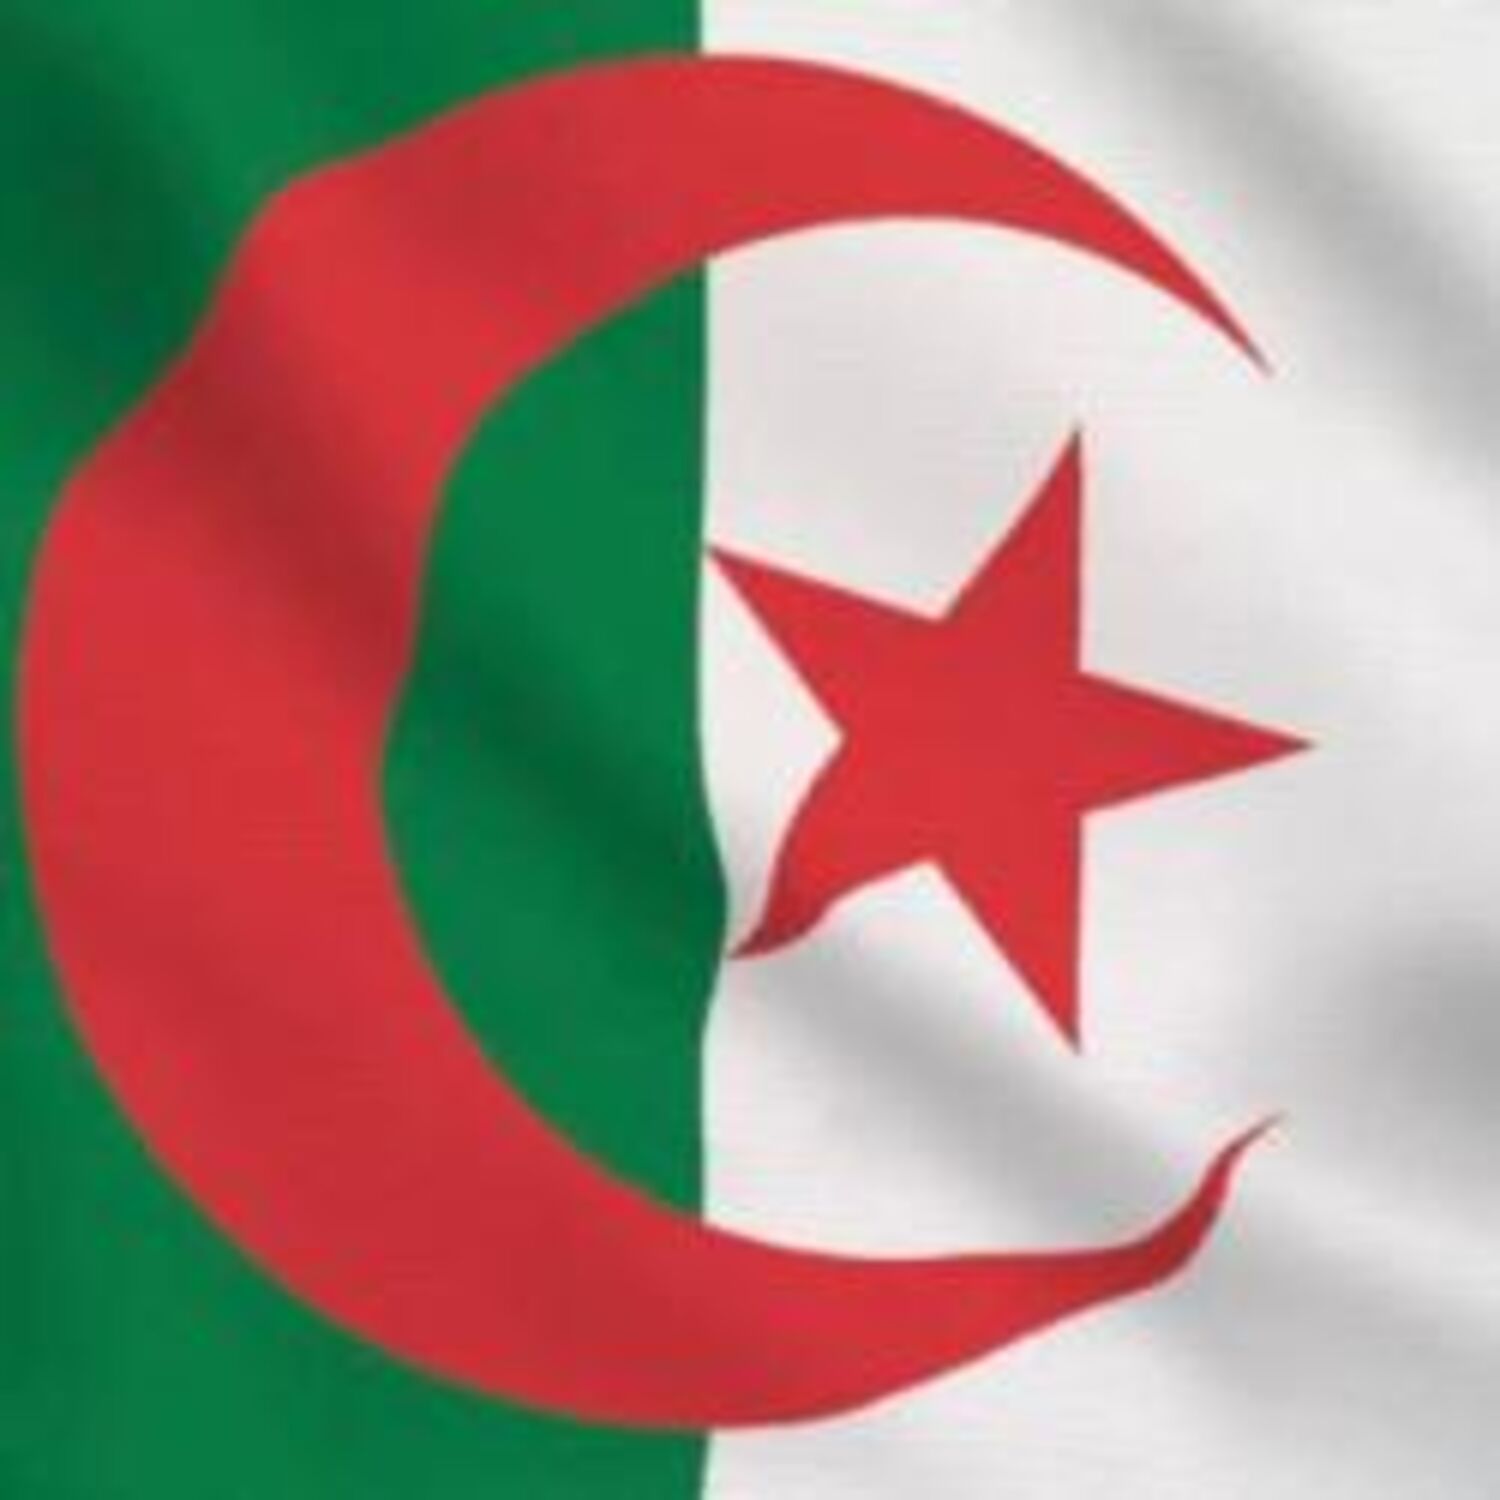 Les Grands Témoins du 20-06-2021 : Algérie, la sortie de crise